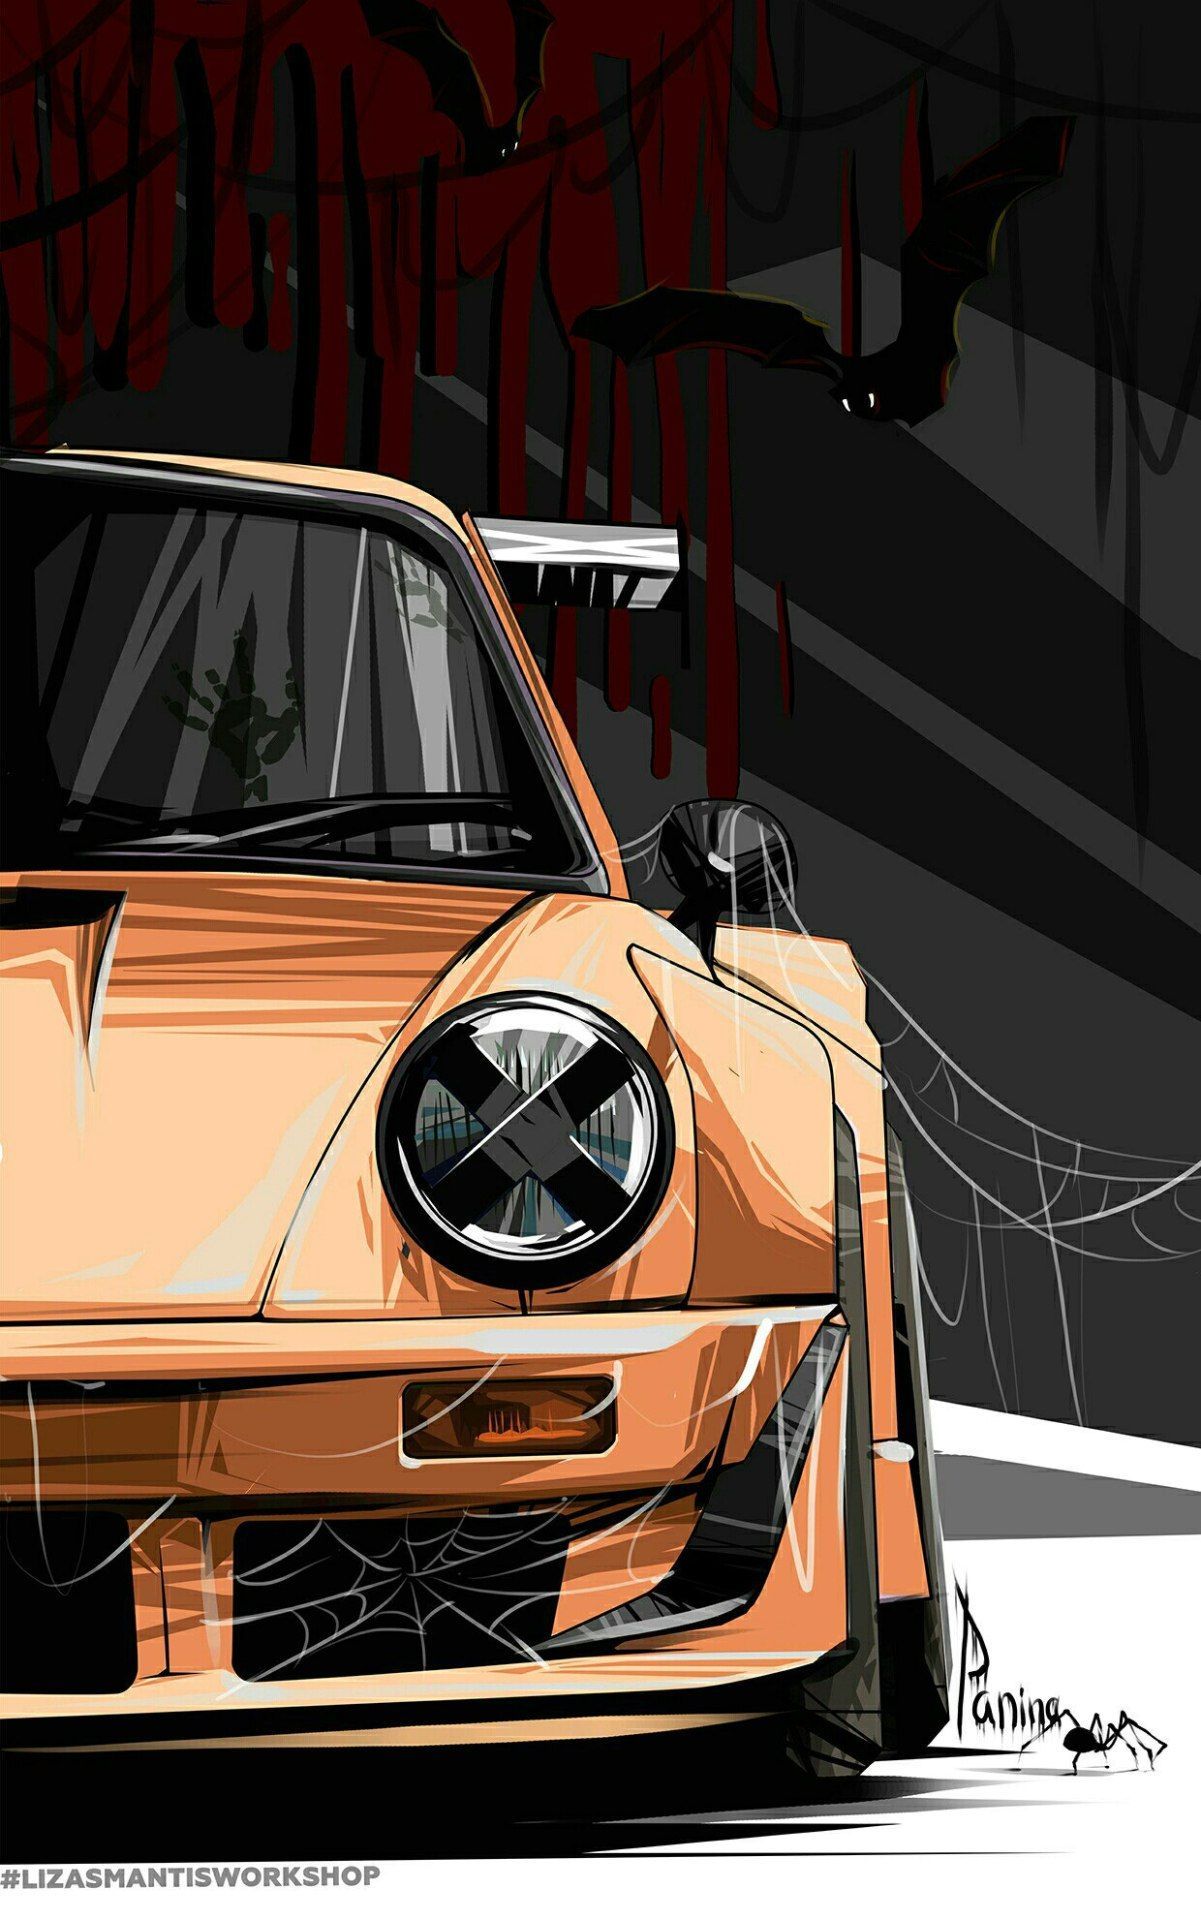 Porsche Racing Livery Wrap - Masquerade - KI Studios